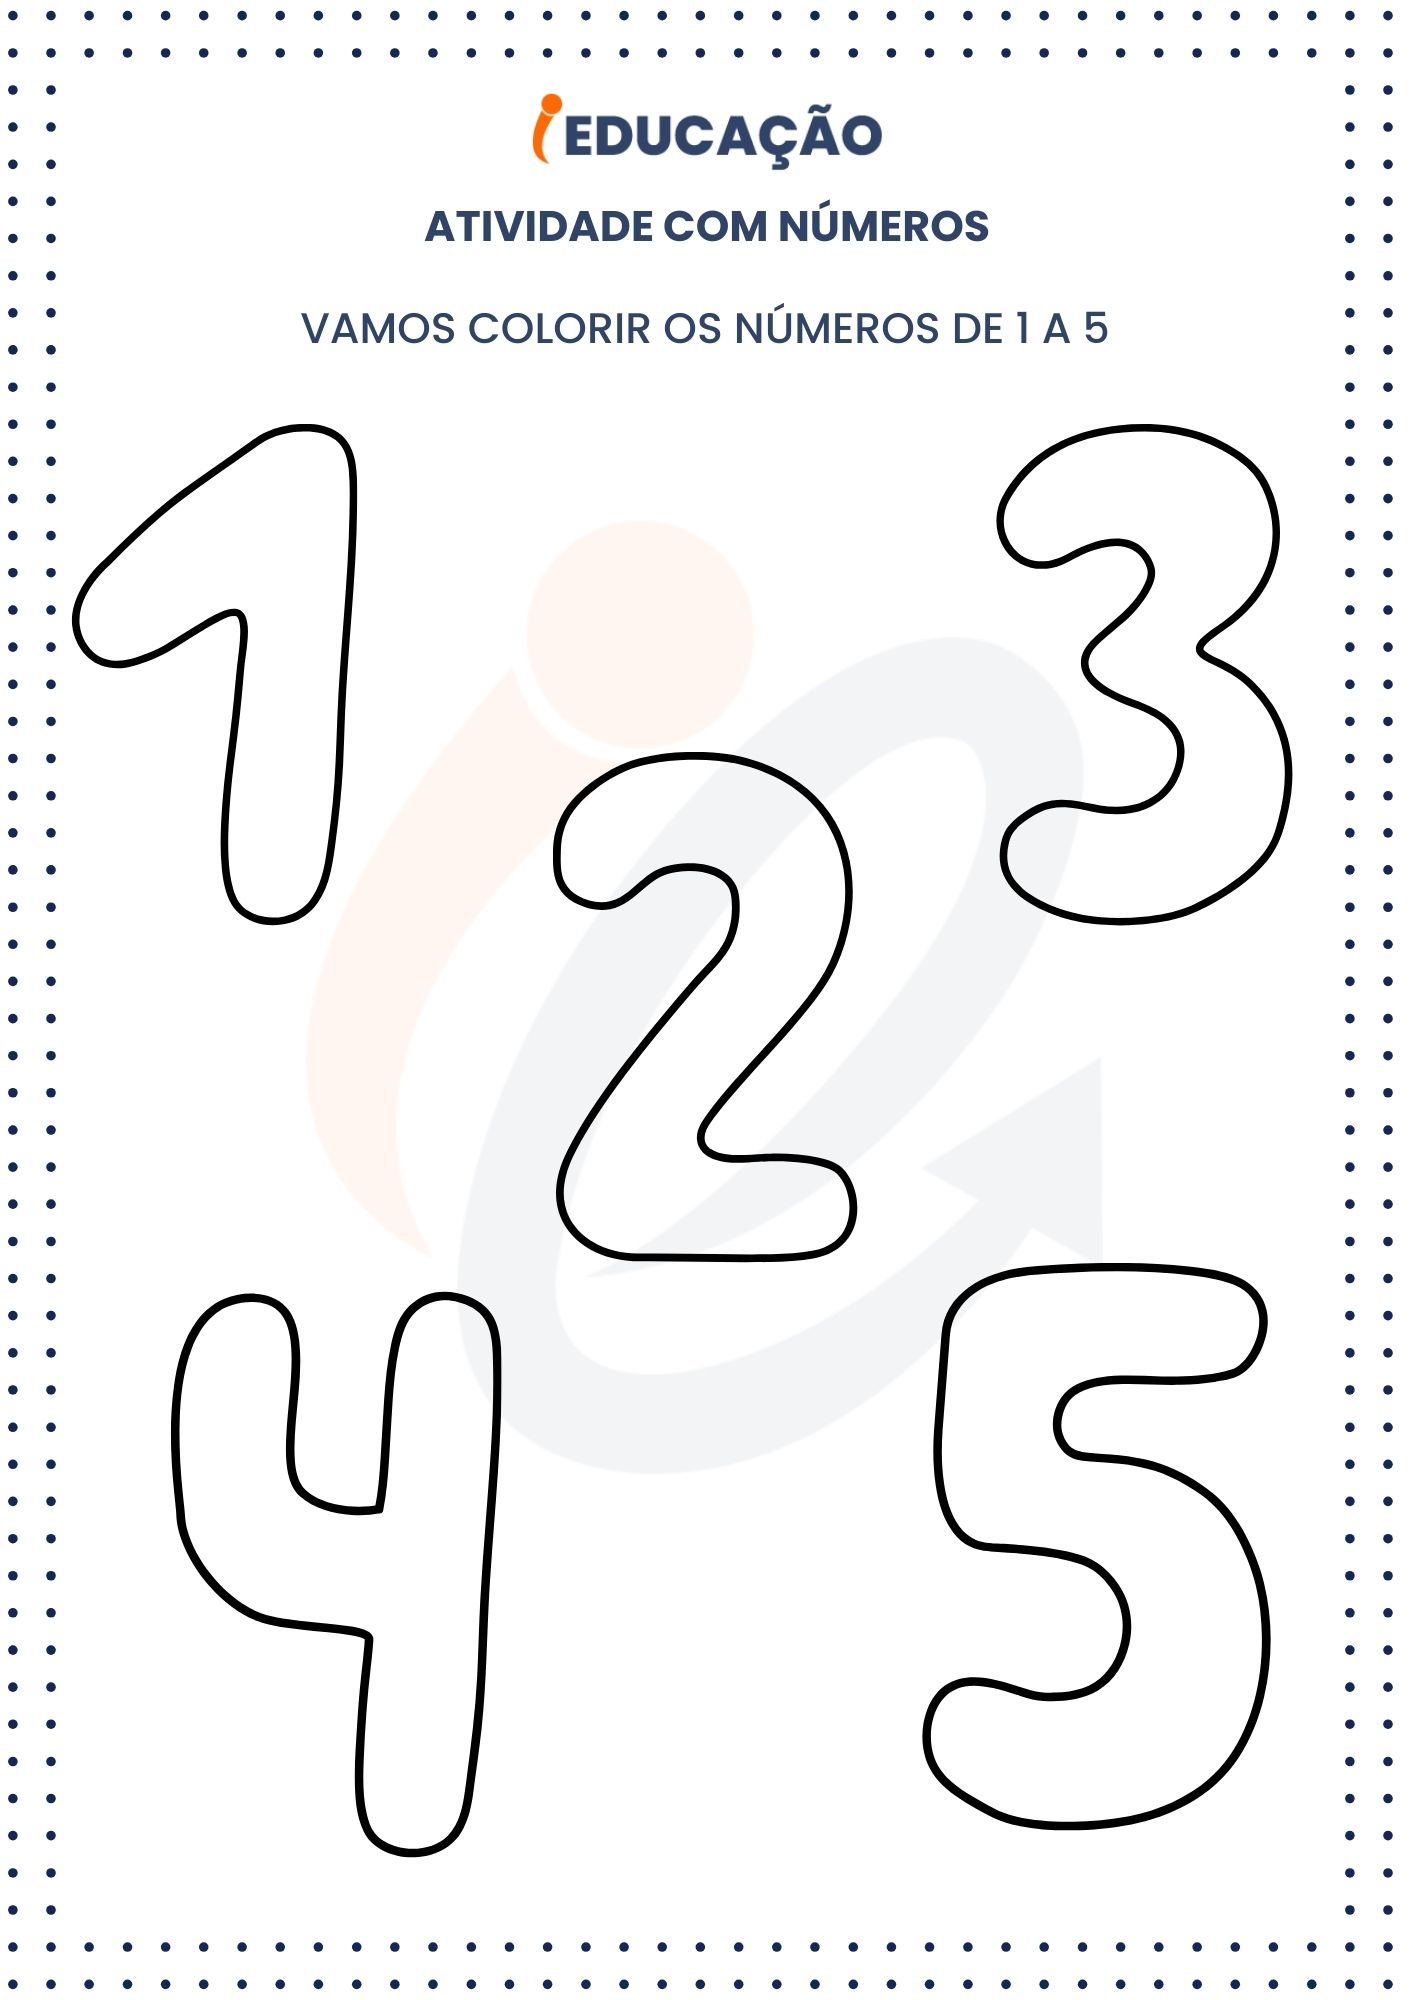 Atividades com números_ vamos colorir os números 1 a 5